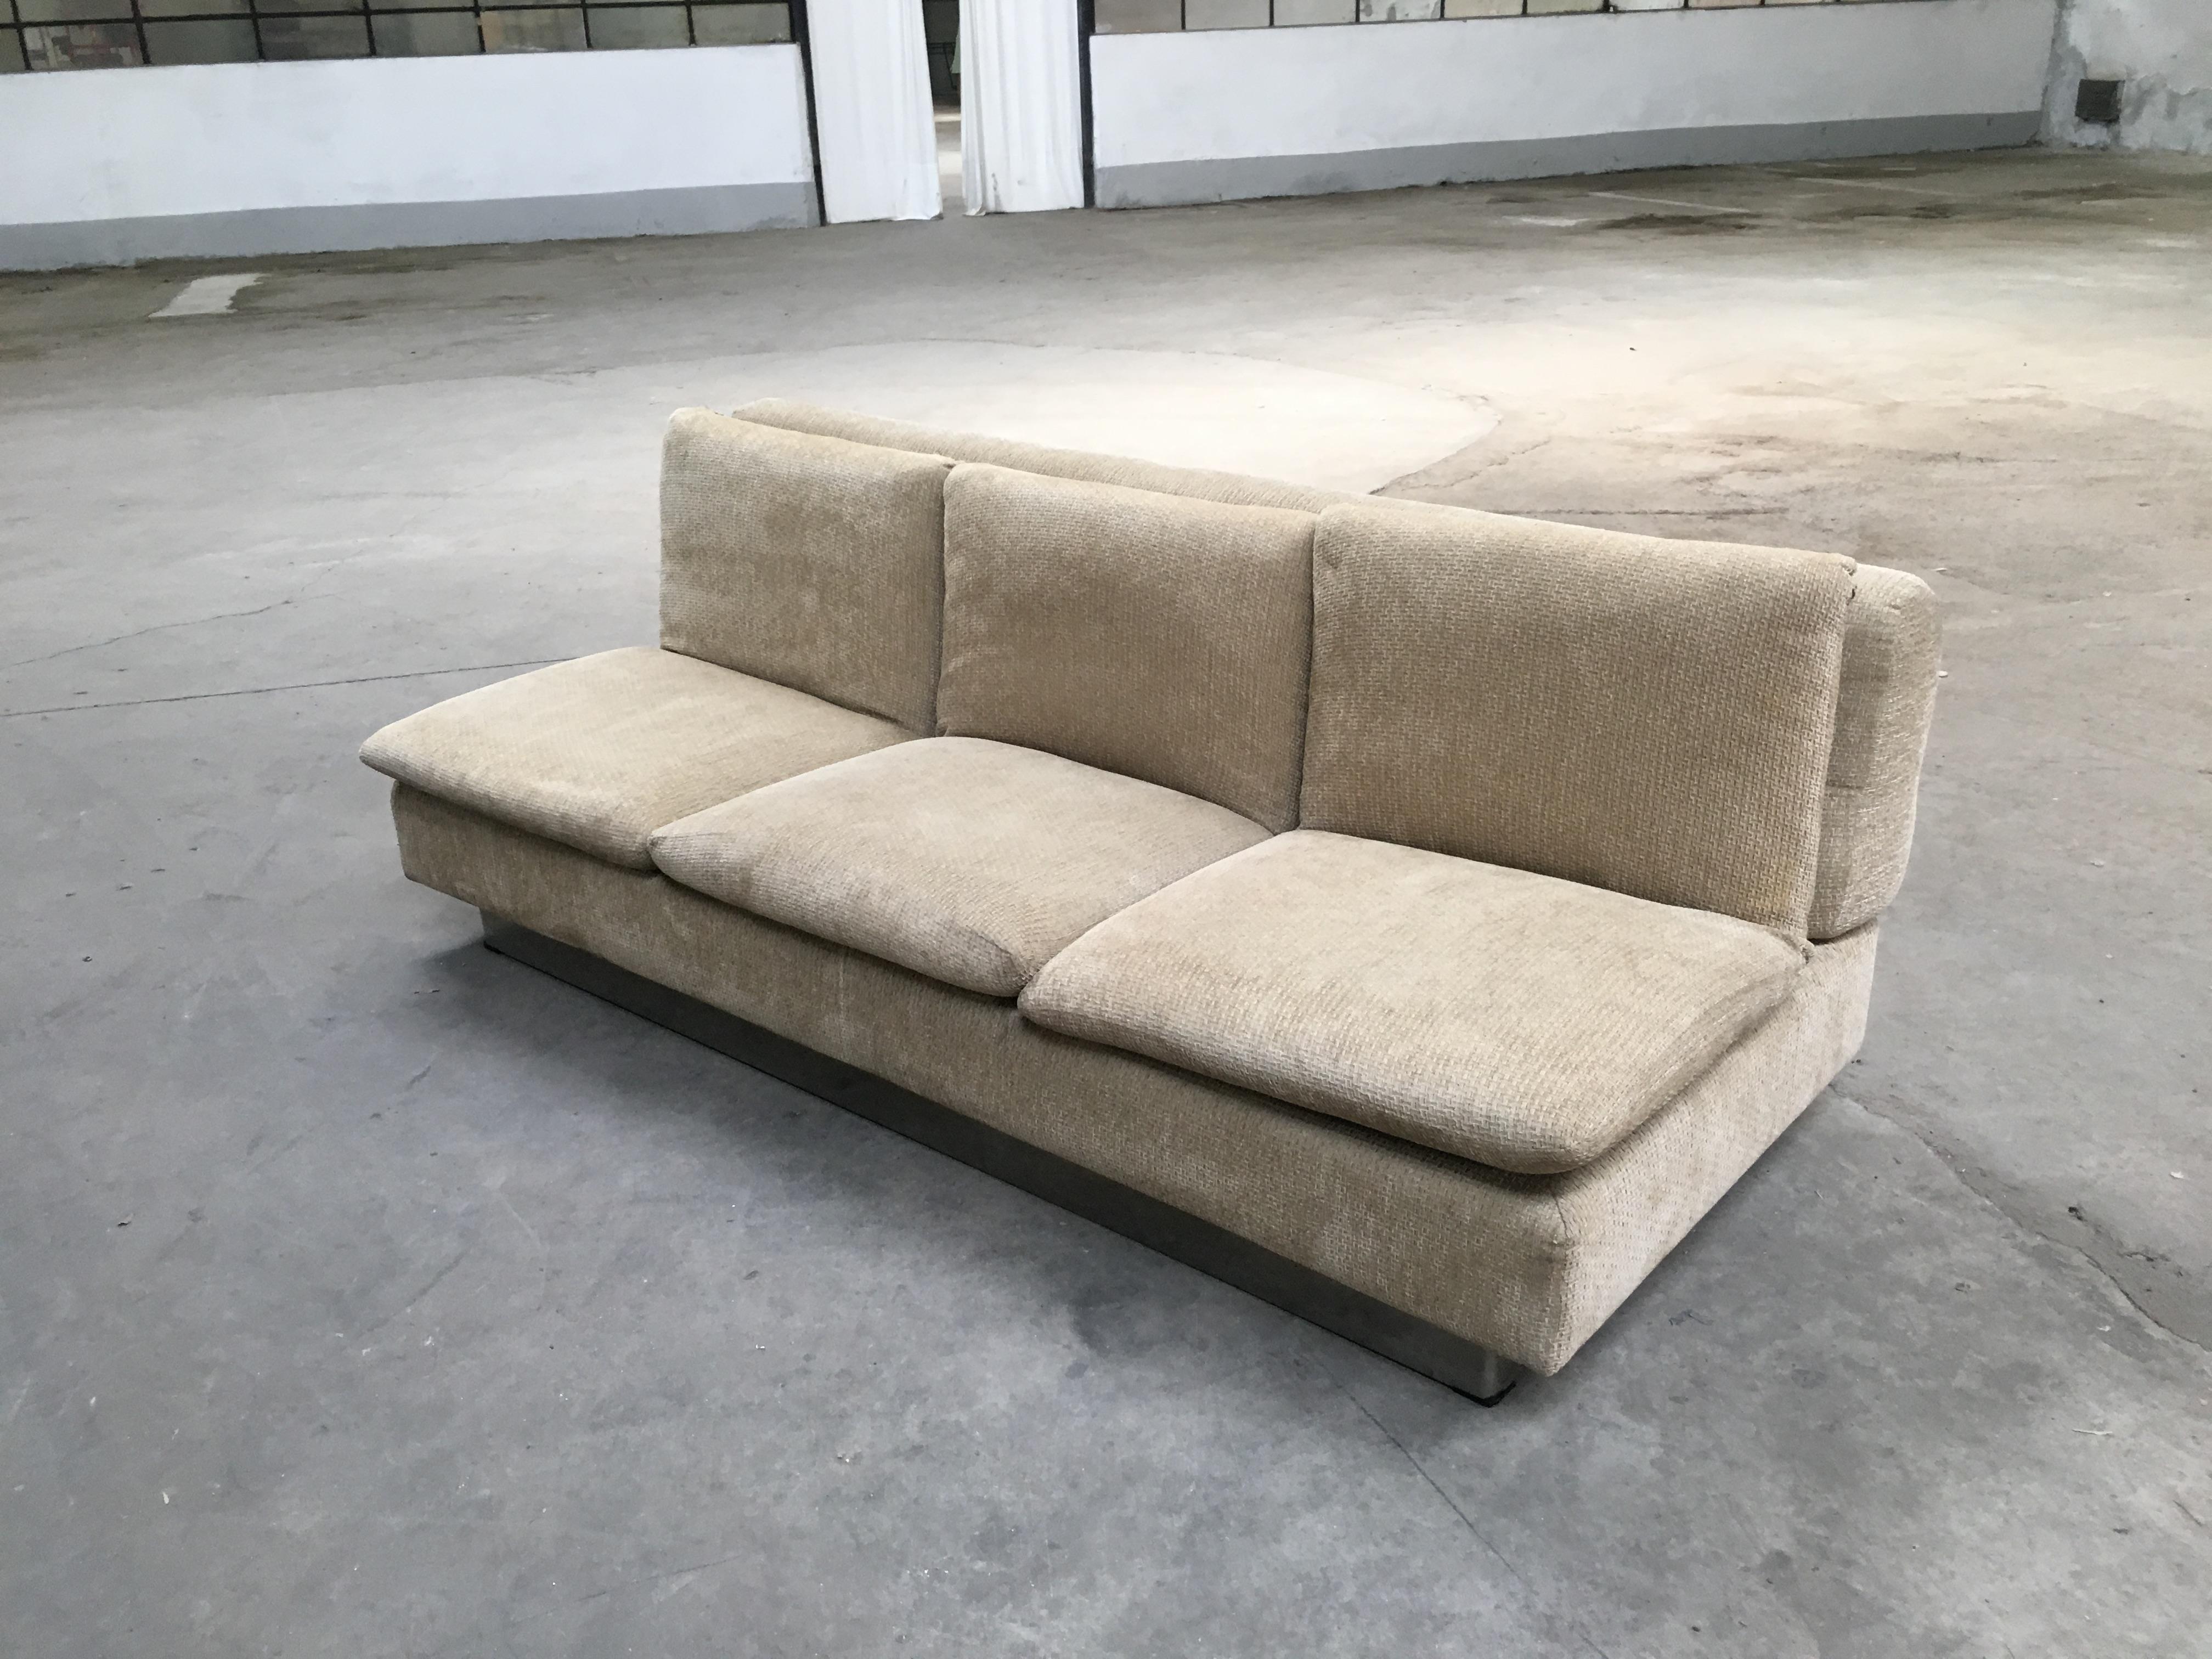 Dreisitziges Schlafsofa von Saporiti mit Originalstoff aus den 1970er Jahren
Dieses Sofa könnte mit einem anderen identisch wie auf dem Bild gezeigt kommen.
Angebot für das Paar (ein Schlafsofa und ein Sofa) auf Anfrage.